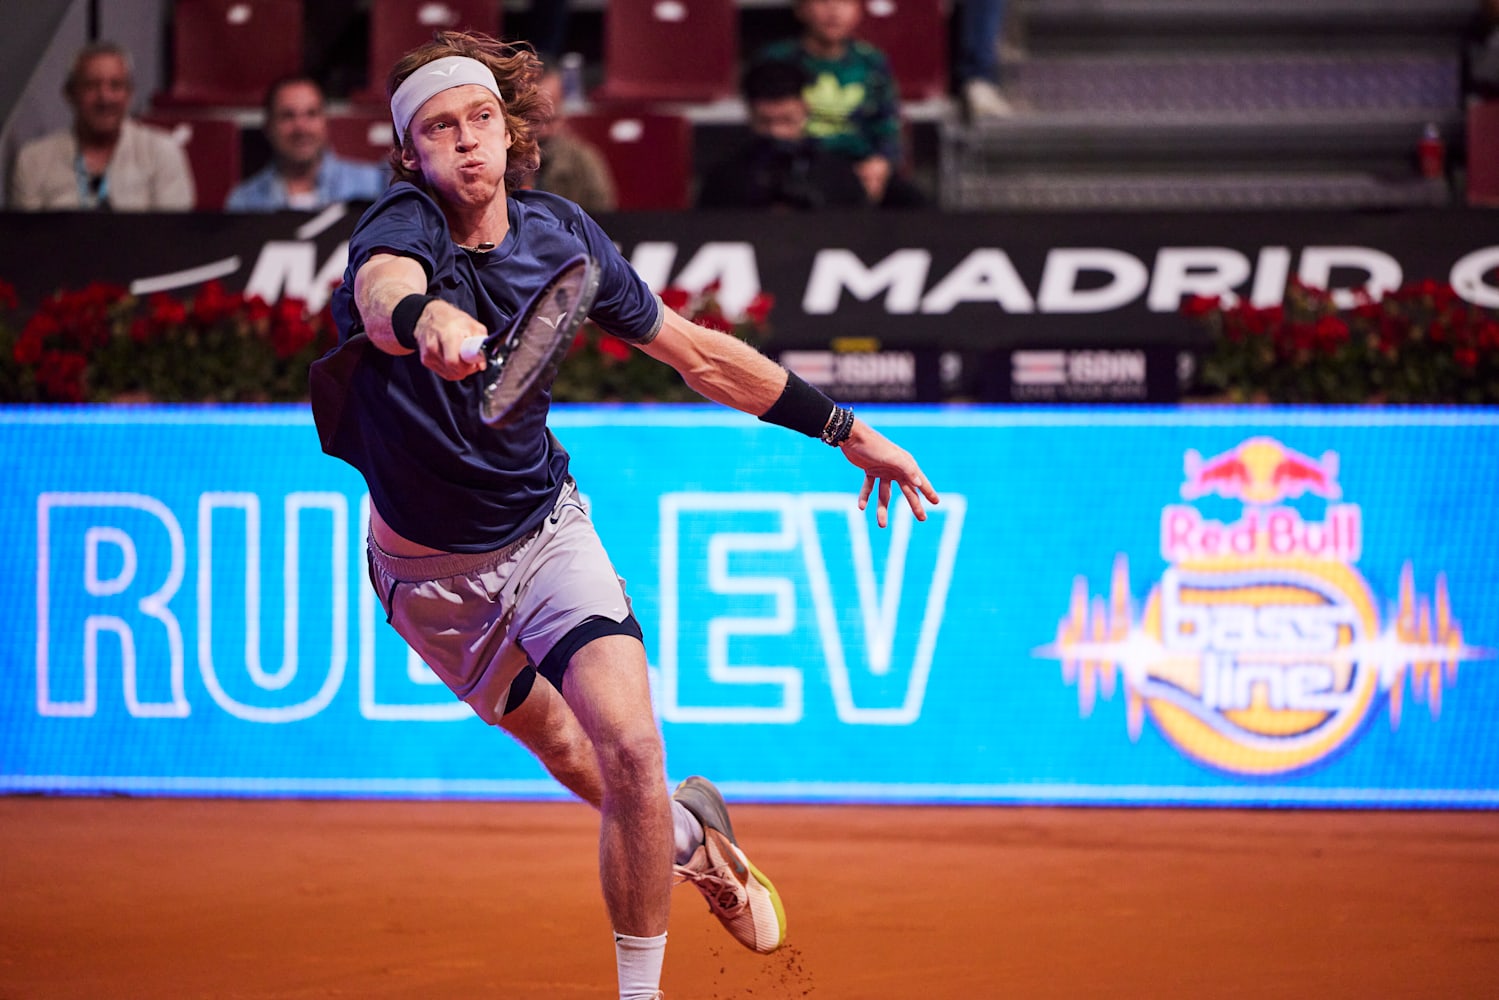 Tennis, ATP – Vienna Open 2022: Rublev knocks out Schwartzman